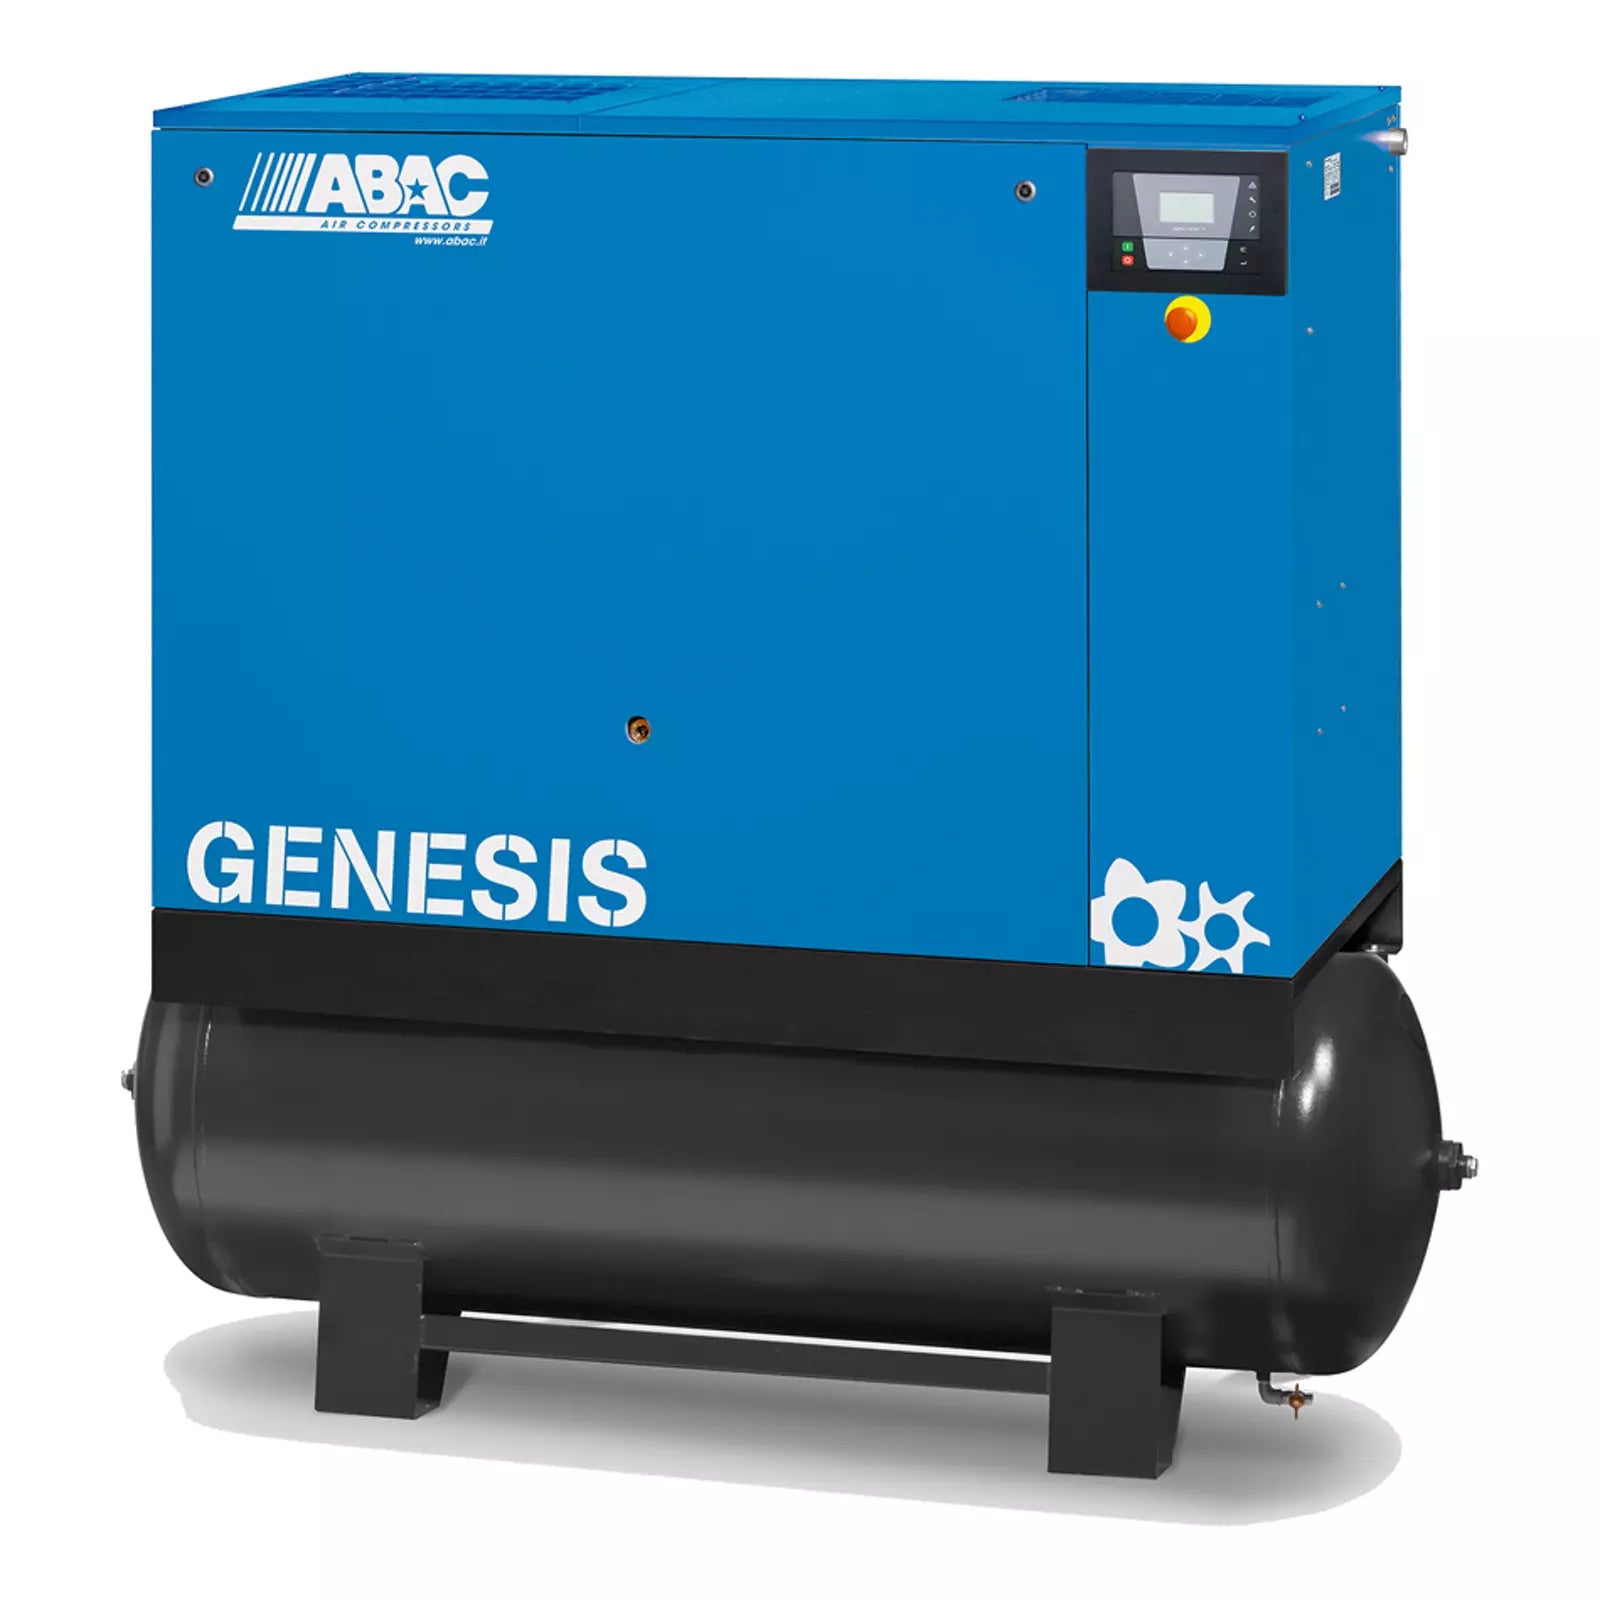 Compressori Genesis - da 5,5 a 22 kW Abac a vite velocita' fissa